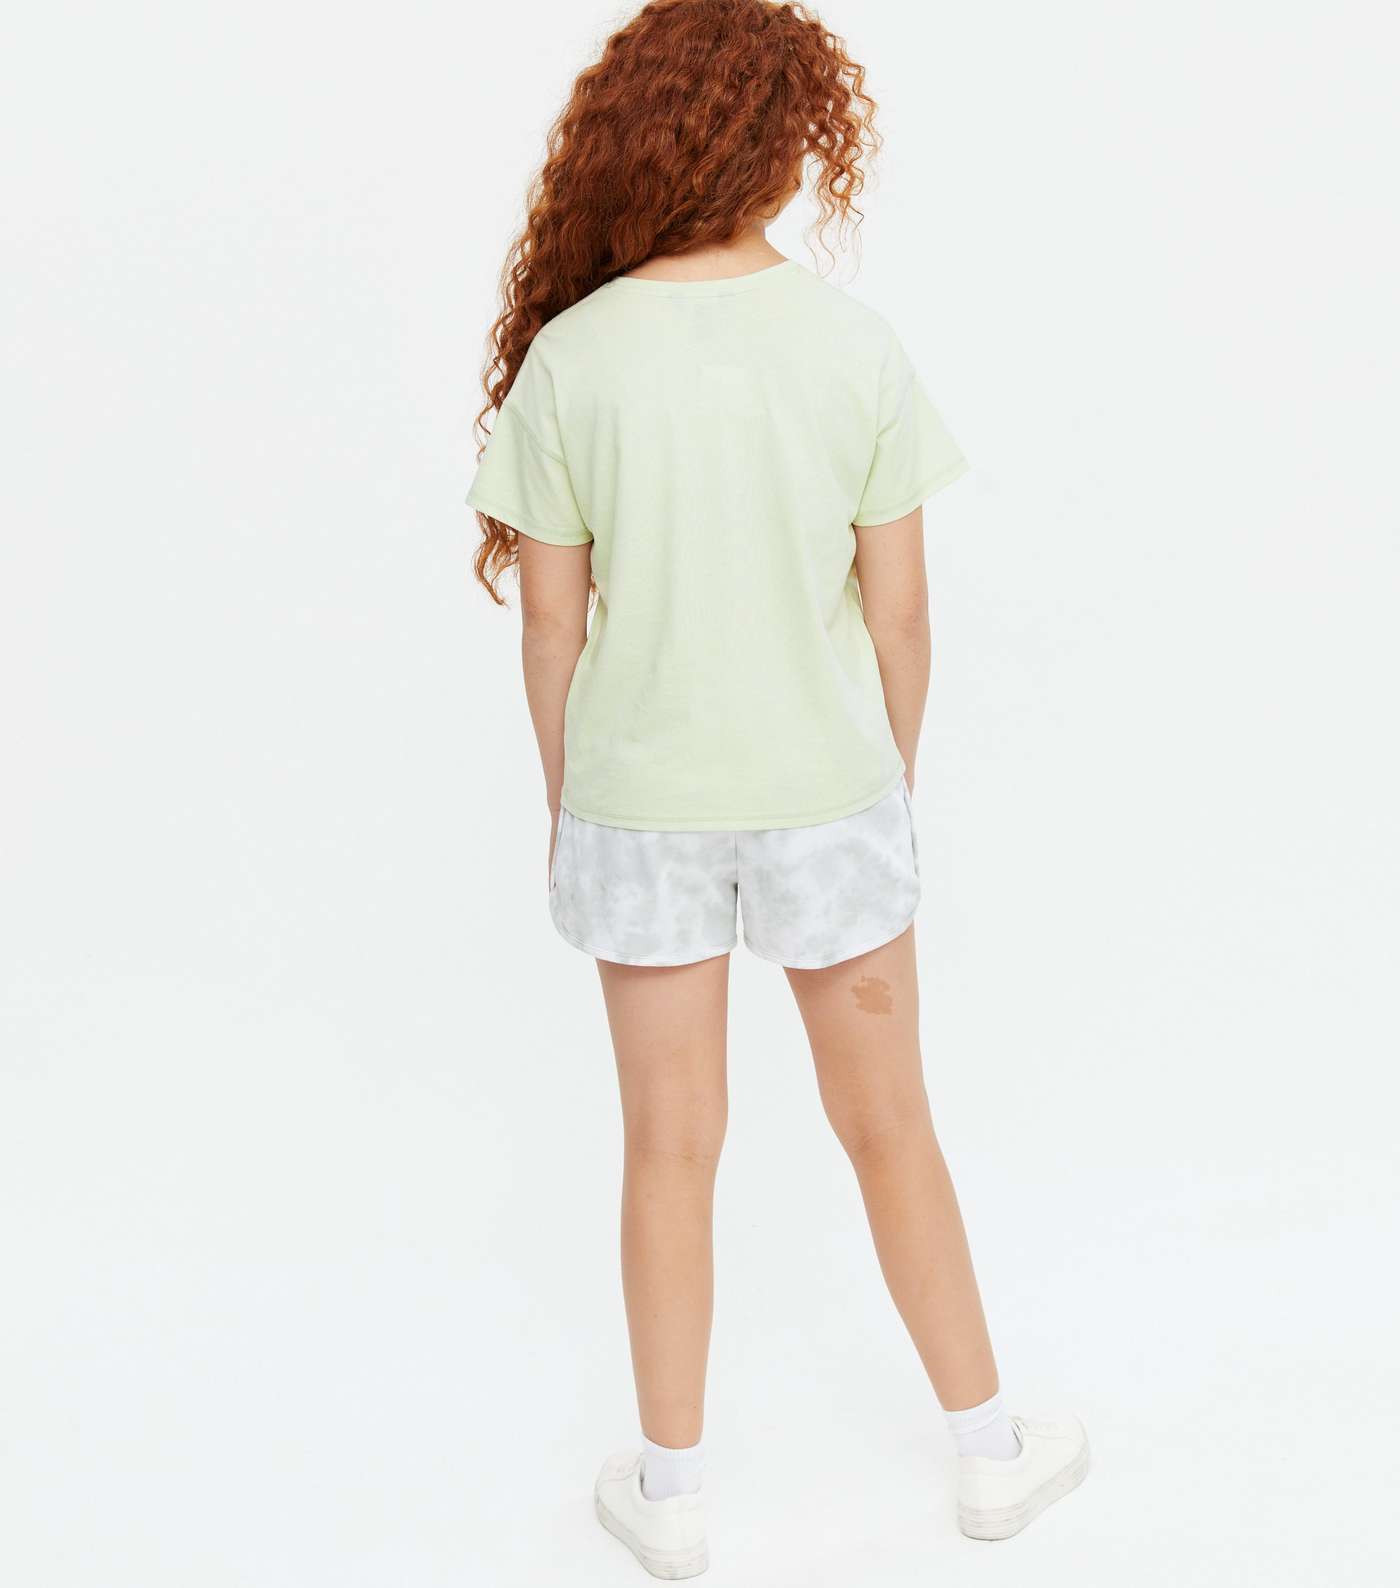 Girls Light Green Cotton T-Shirt Image 4